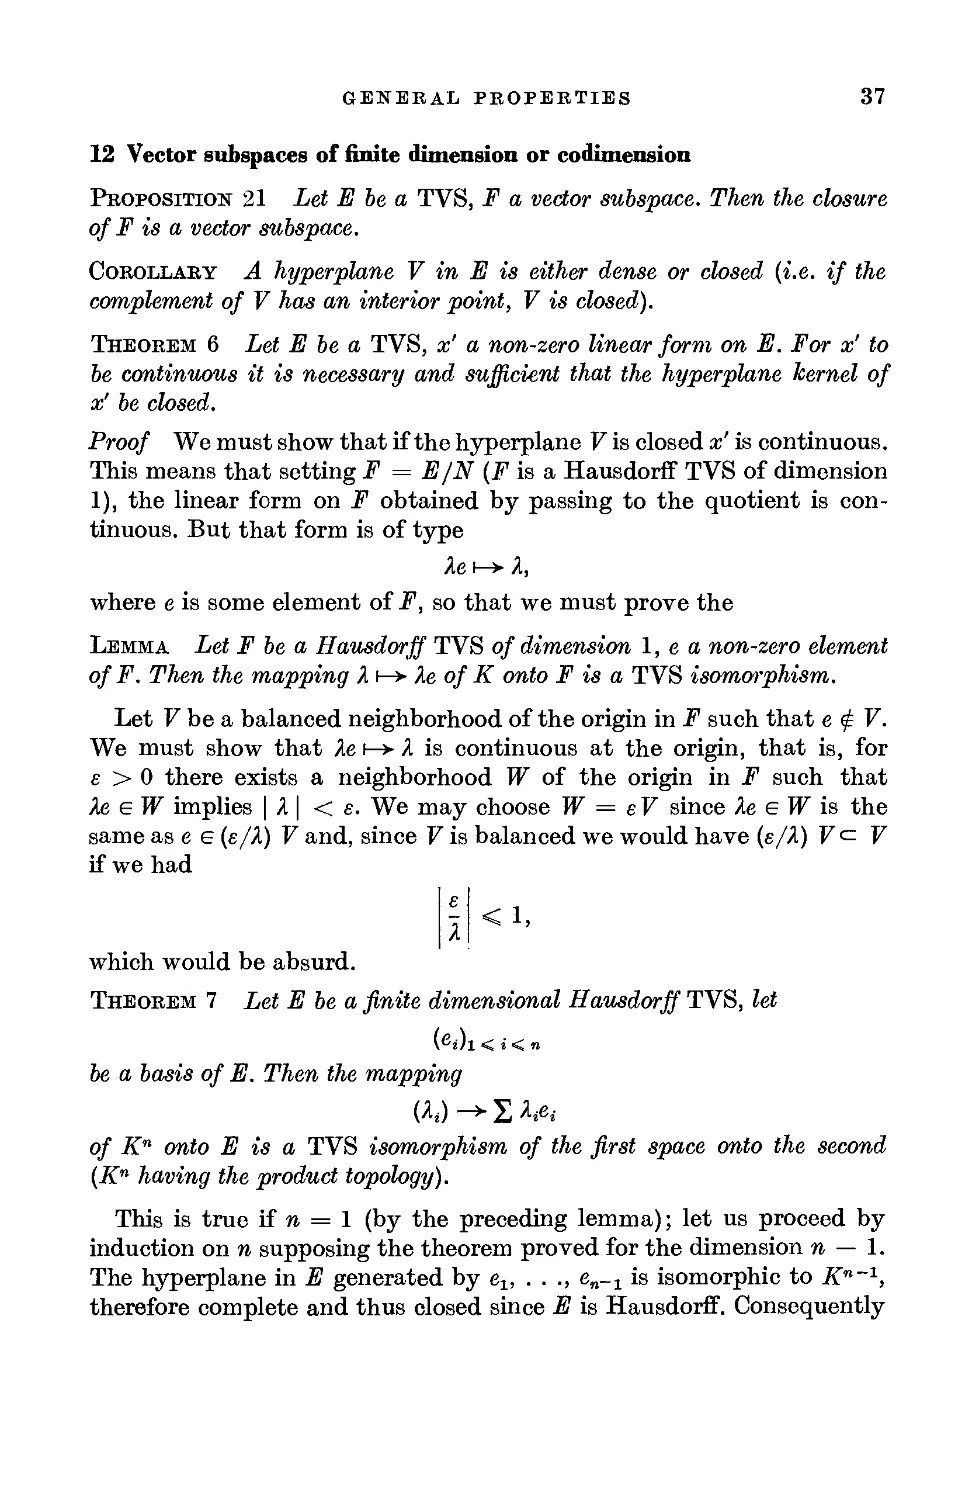 12. Vector subspaces of finite dimension or codimension